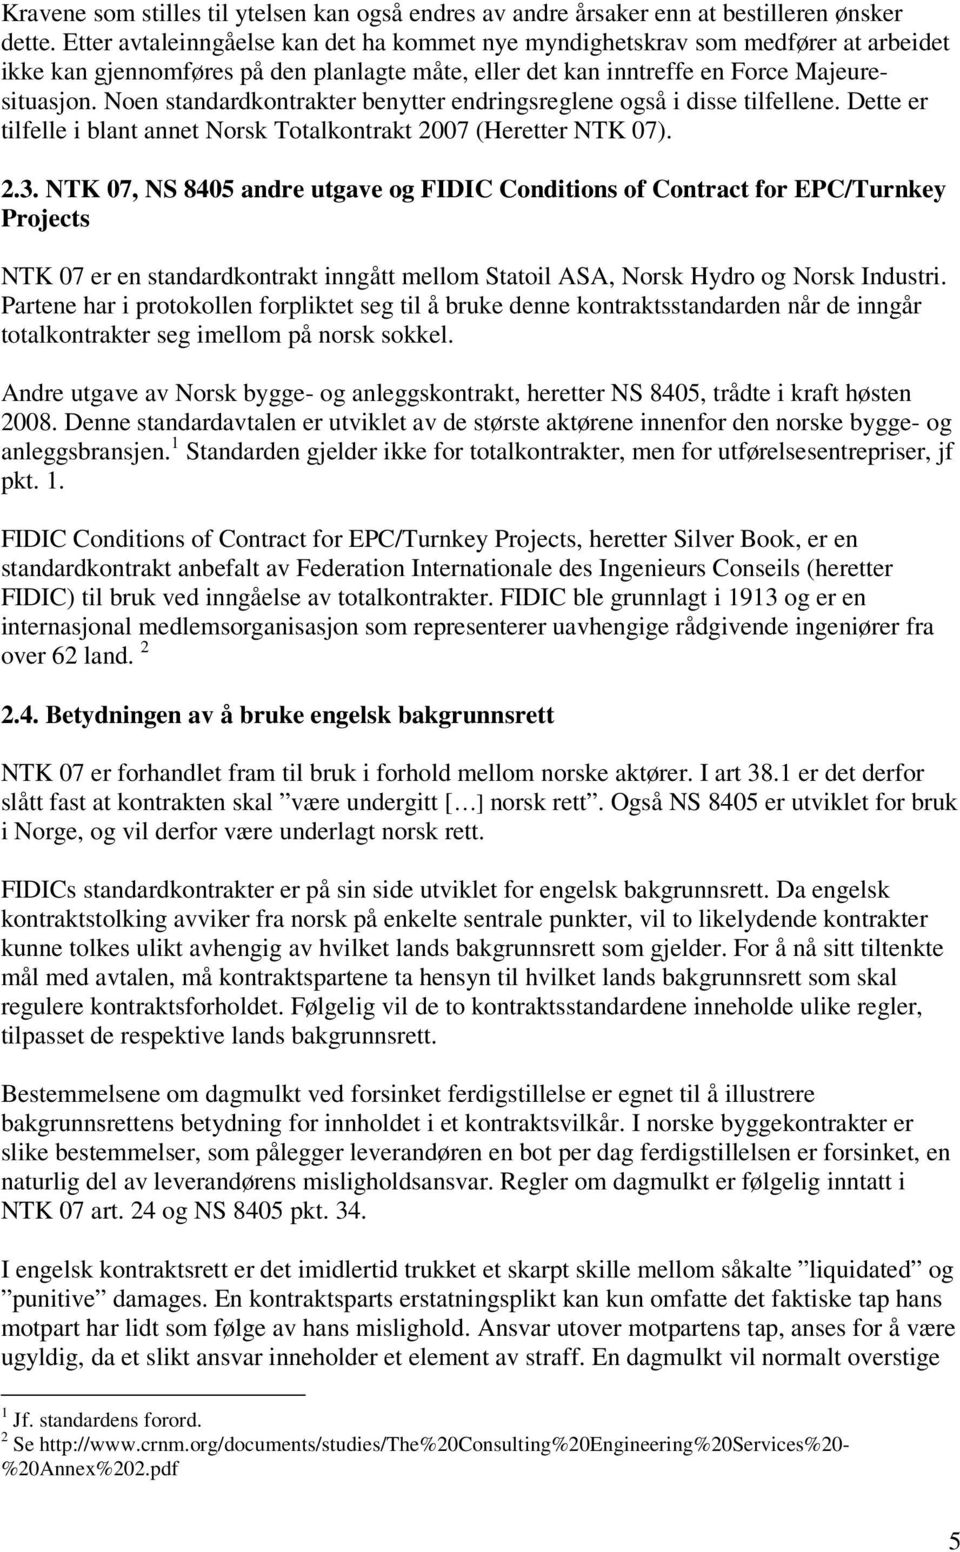 Noen standardkontrakter benytter endringsreglene også i disse tilfellene. Dette er tilfelle i blant annet Norsk Totalkontrakt 2007 (Heretter NTK 07). 2.3.